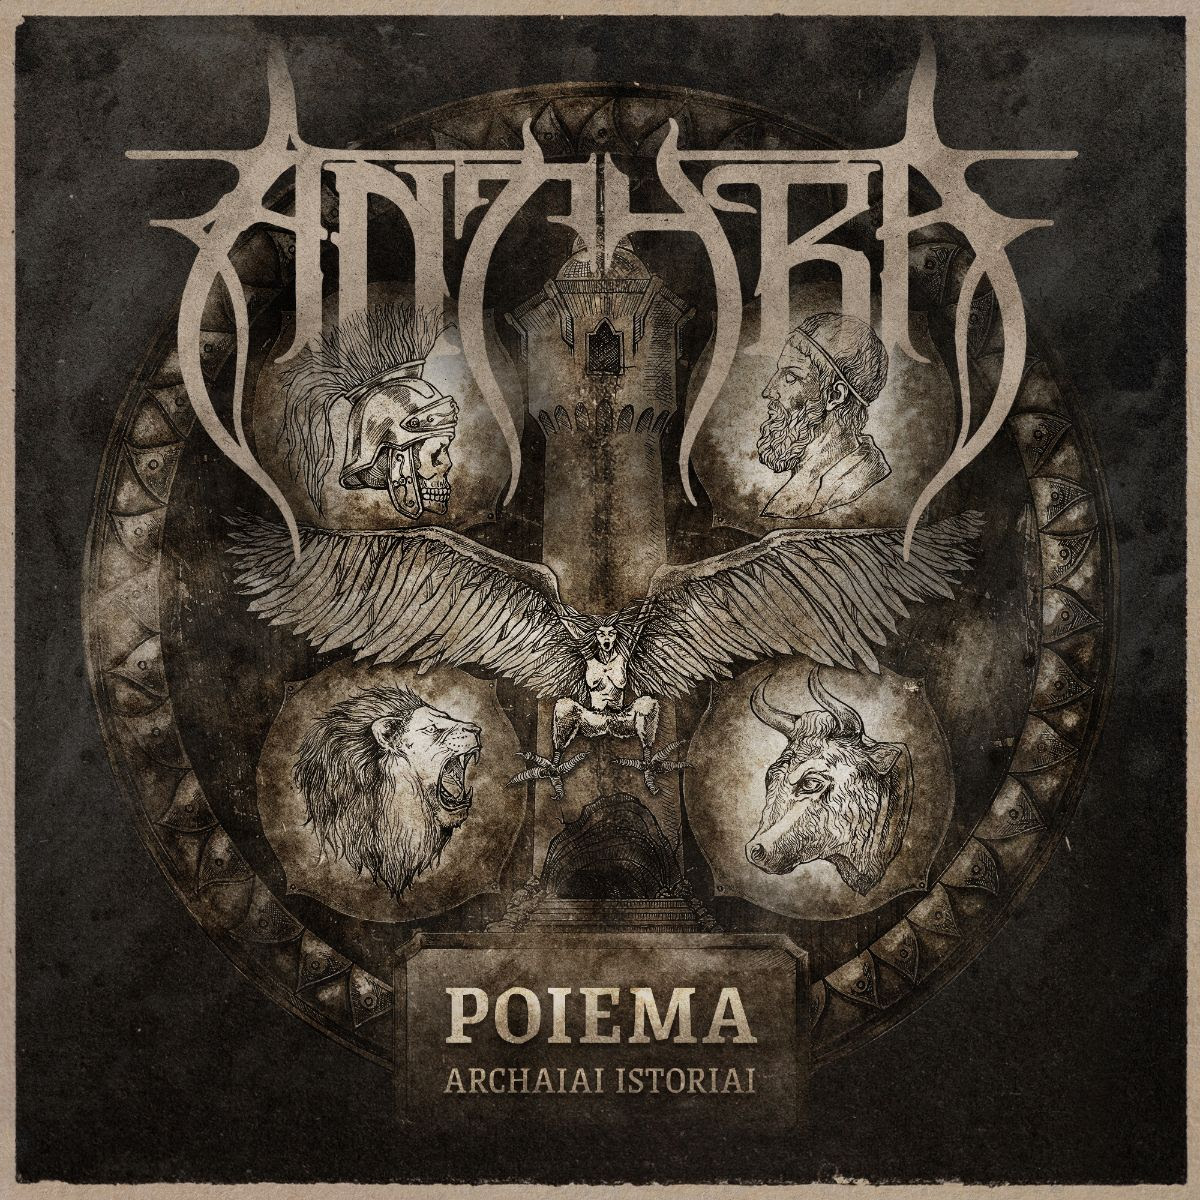 Antyra publica hoy su nuevo disco “Poiema: Archaiai Istoriai”